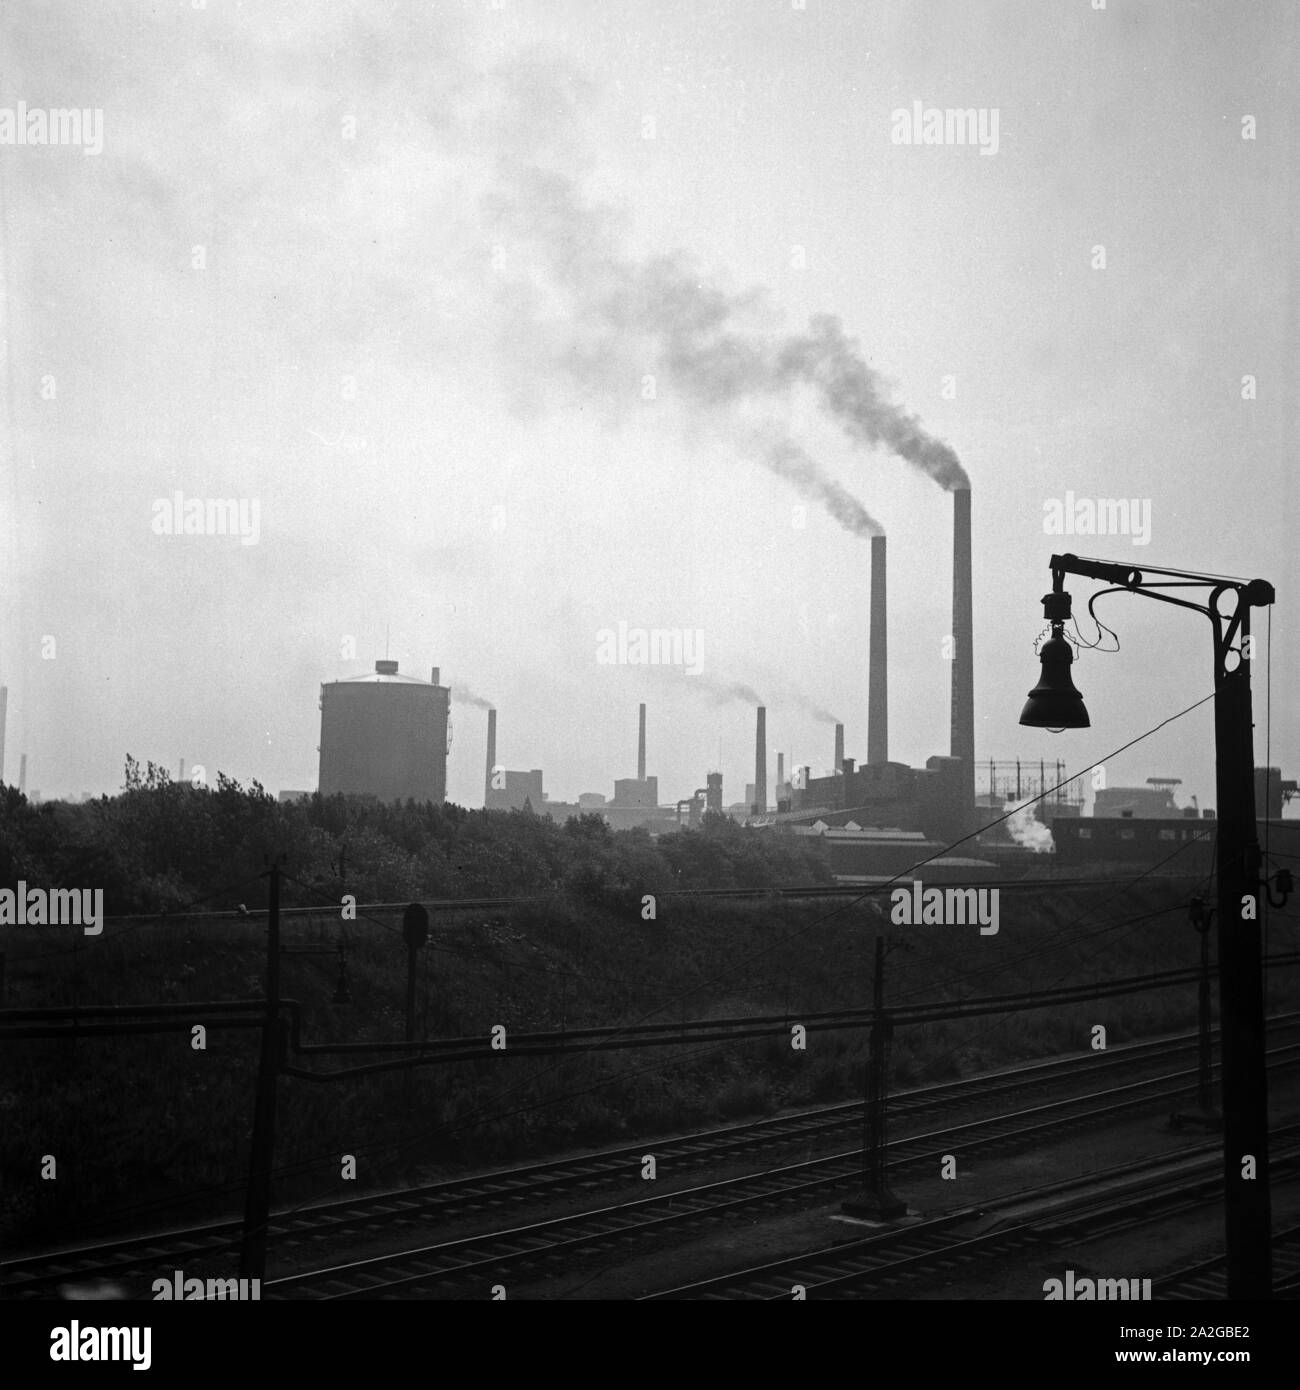 Industriegleis in Duisburg, Deutschland 1930er Jahre. Industrial railway track at Duisburg, Germany 1930s. Stock Photo